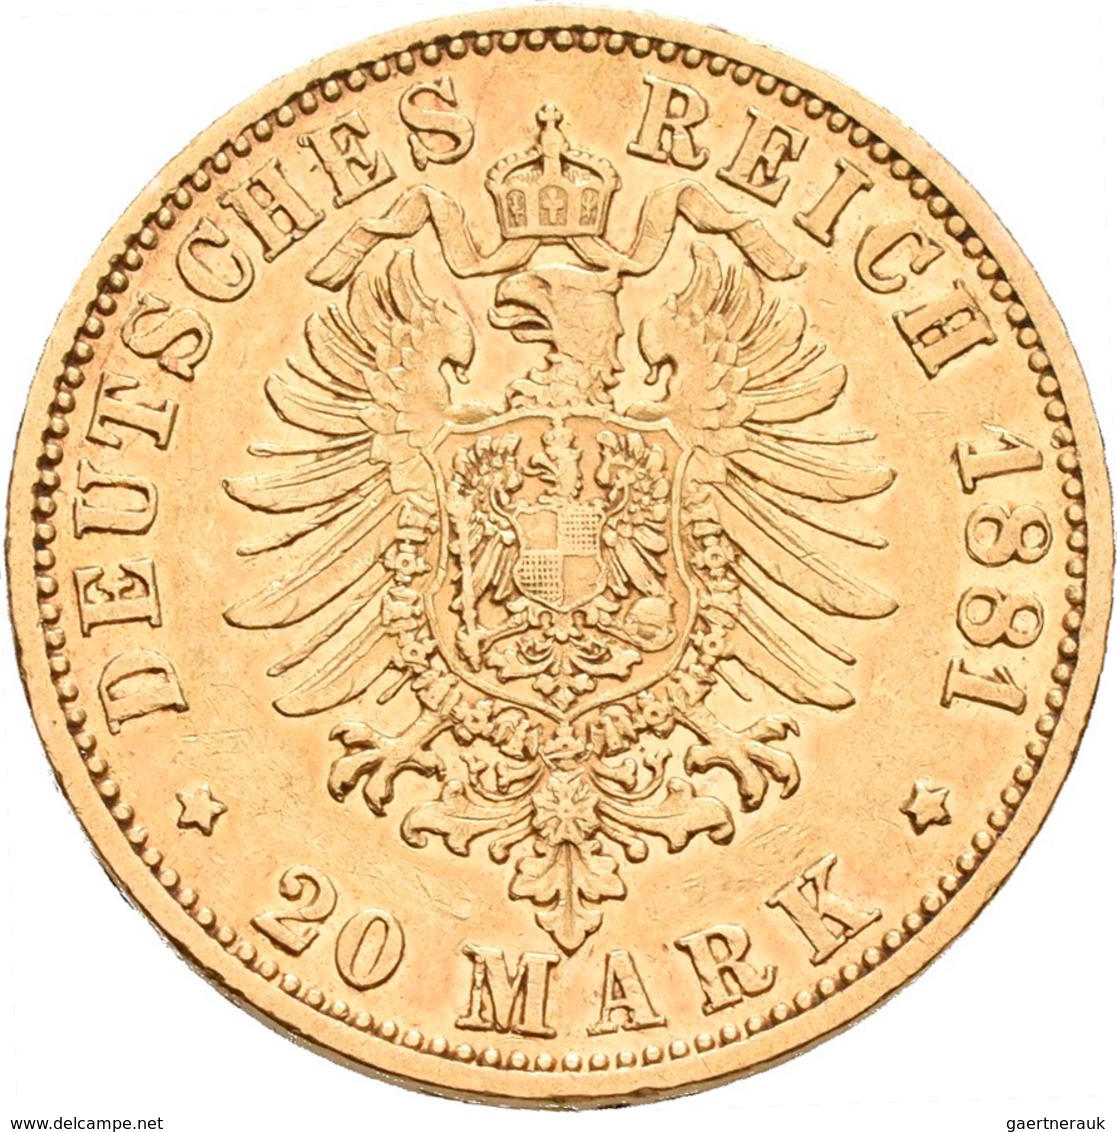 Reuß Jüngerer Linie: Heinrich XIV. 1867-1913: 20 Mark 1881 A, Jaeger 256. 7,91 G, 900/1000 Gold. Auf - Monedas En Oro